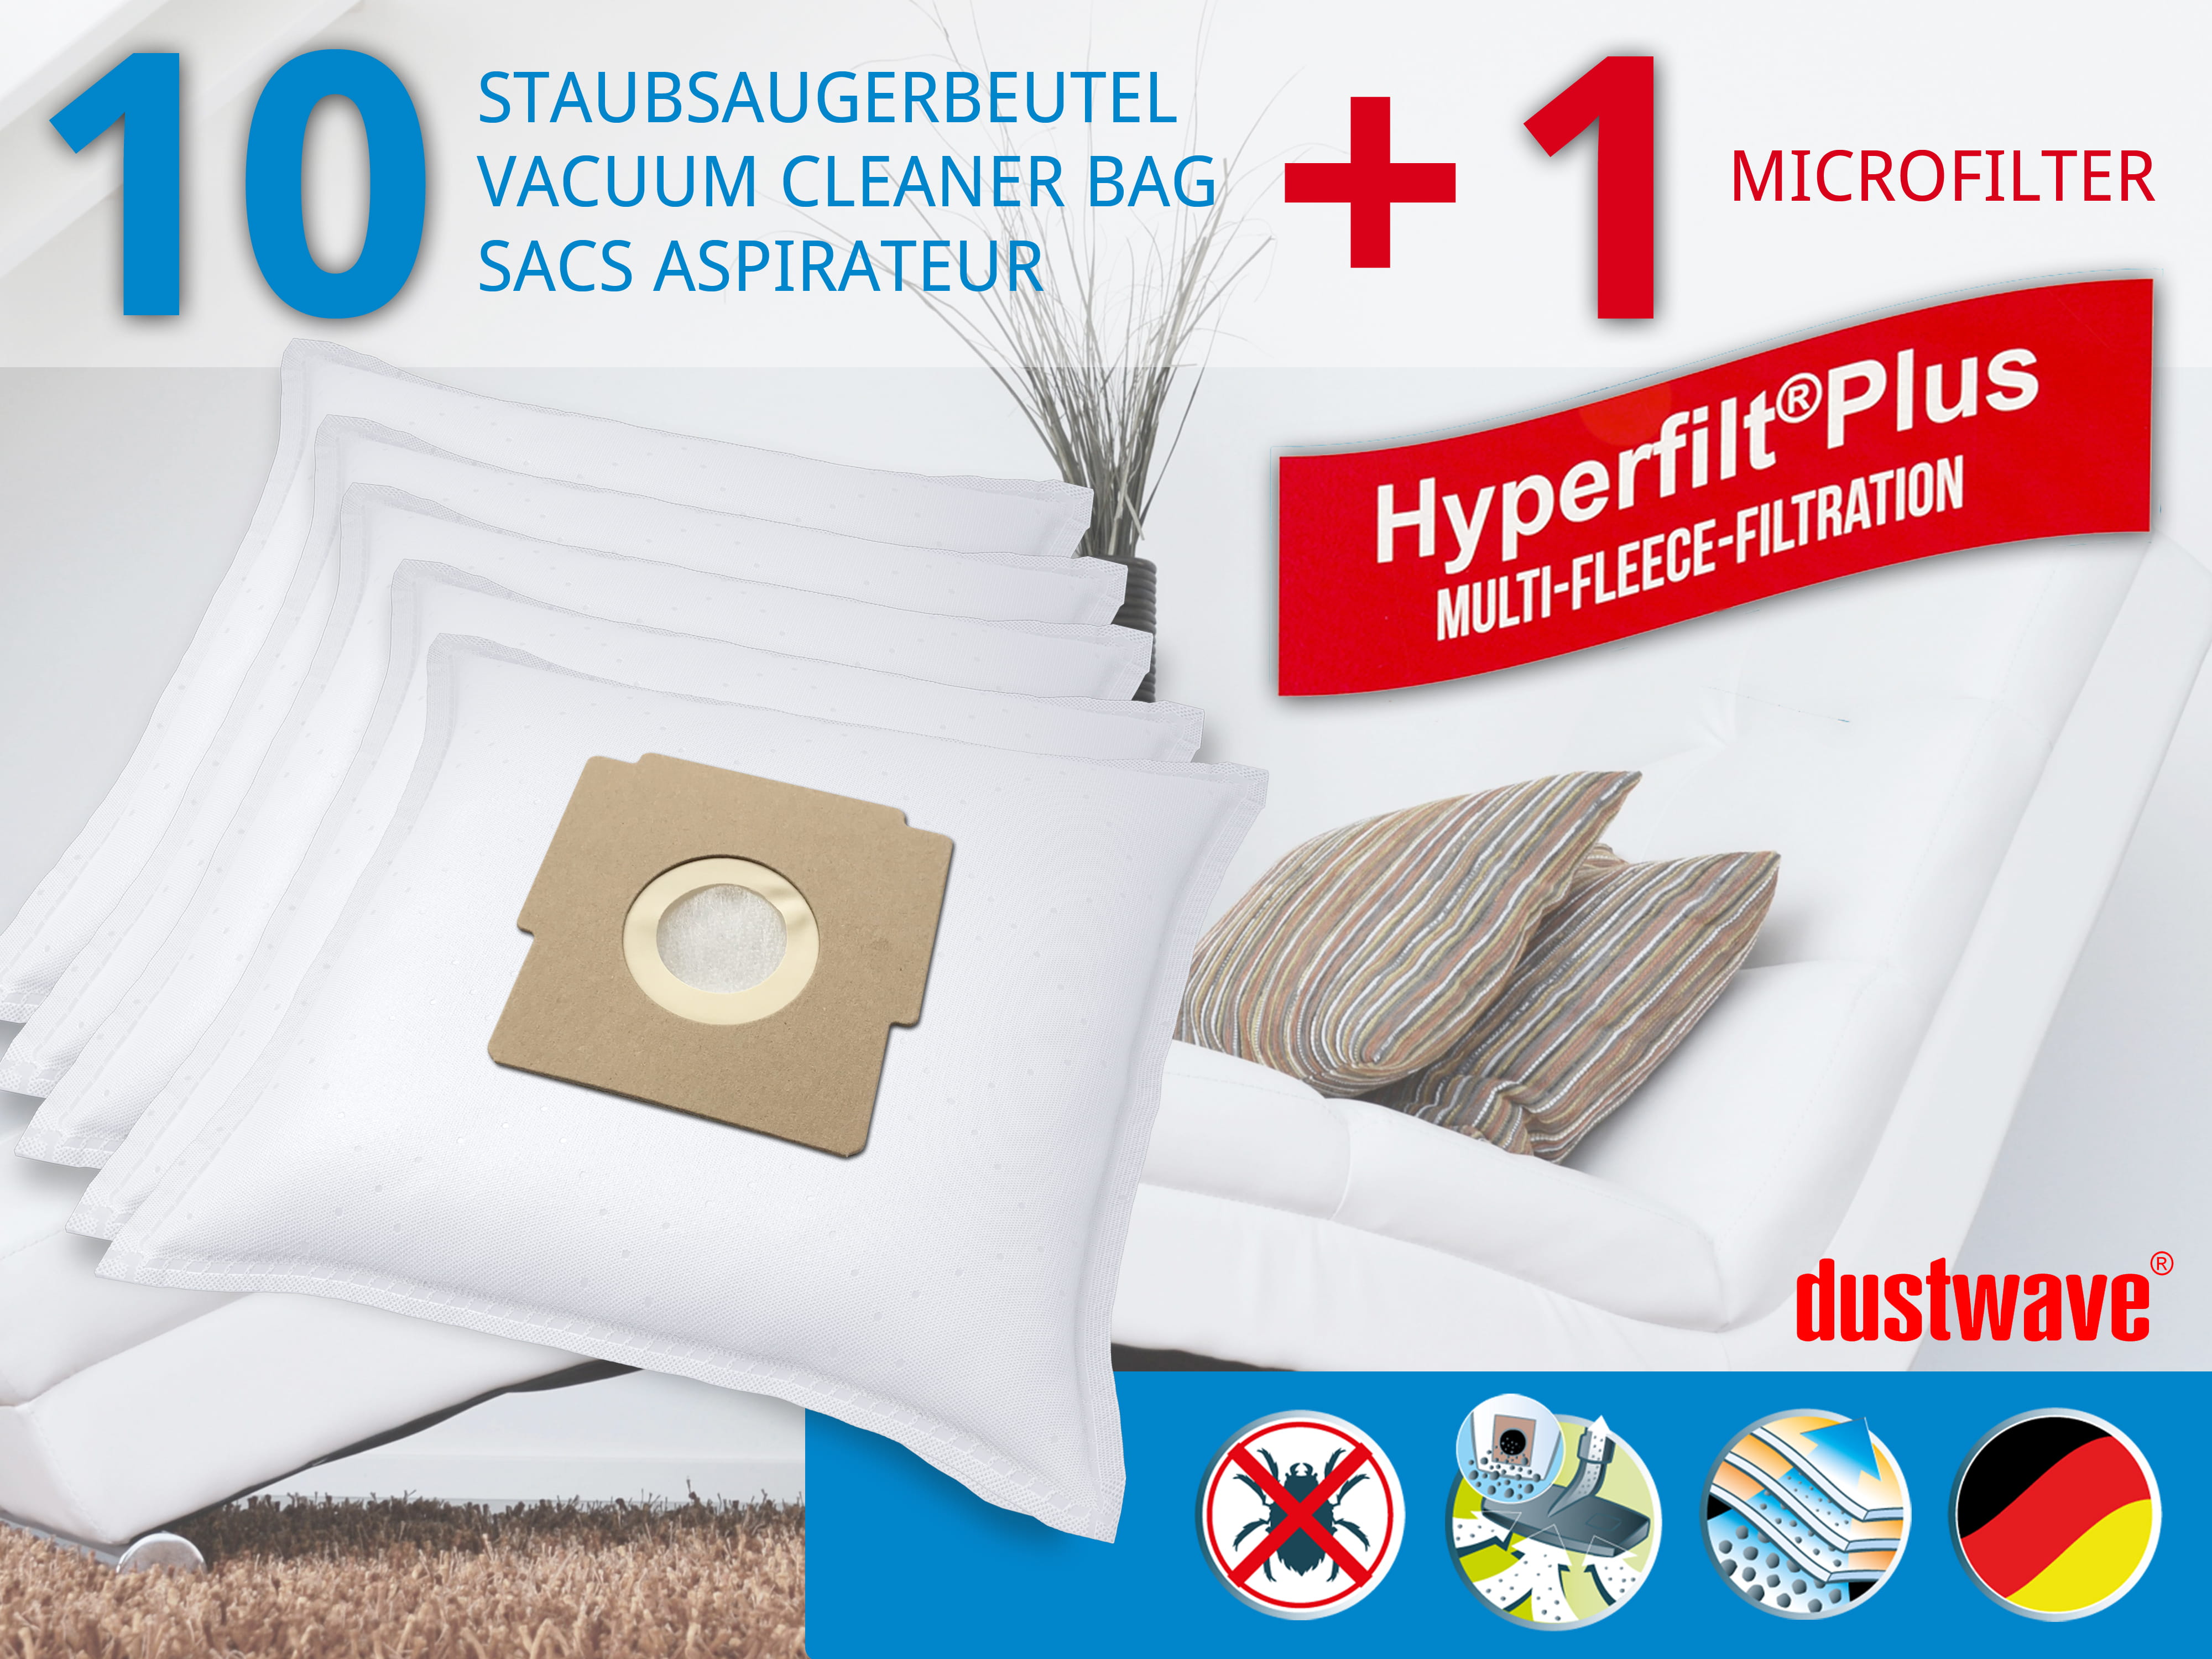 Dustwave® 10 Staubsaugerbeutel für Blue Sky BVC 1500 / BVC1500 - hocheffizient, mehrlagiges Mikrovlies mit Hygieneverschluss - Made in Germany